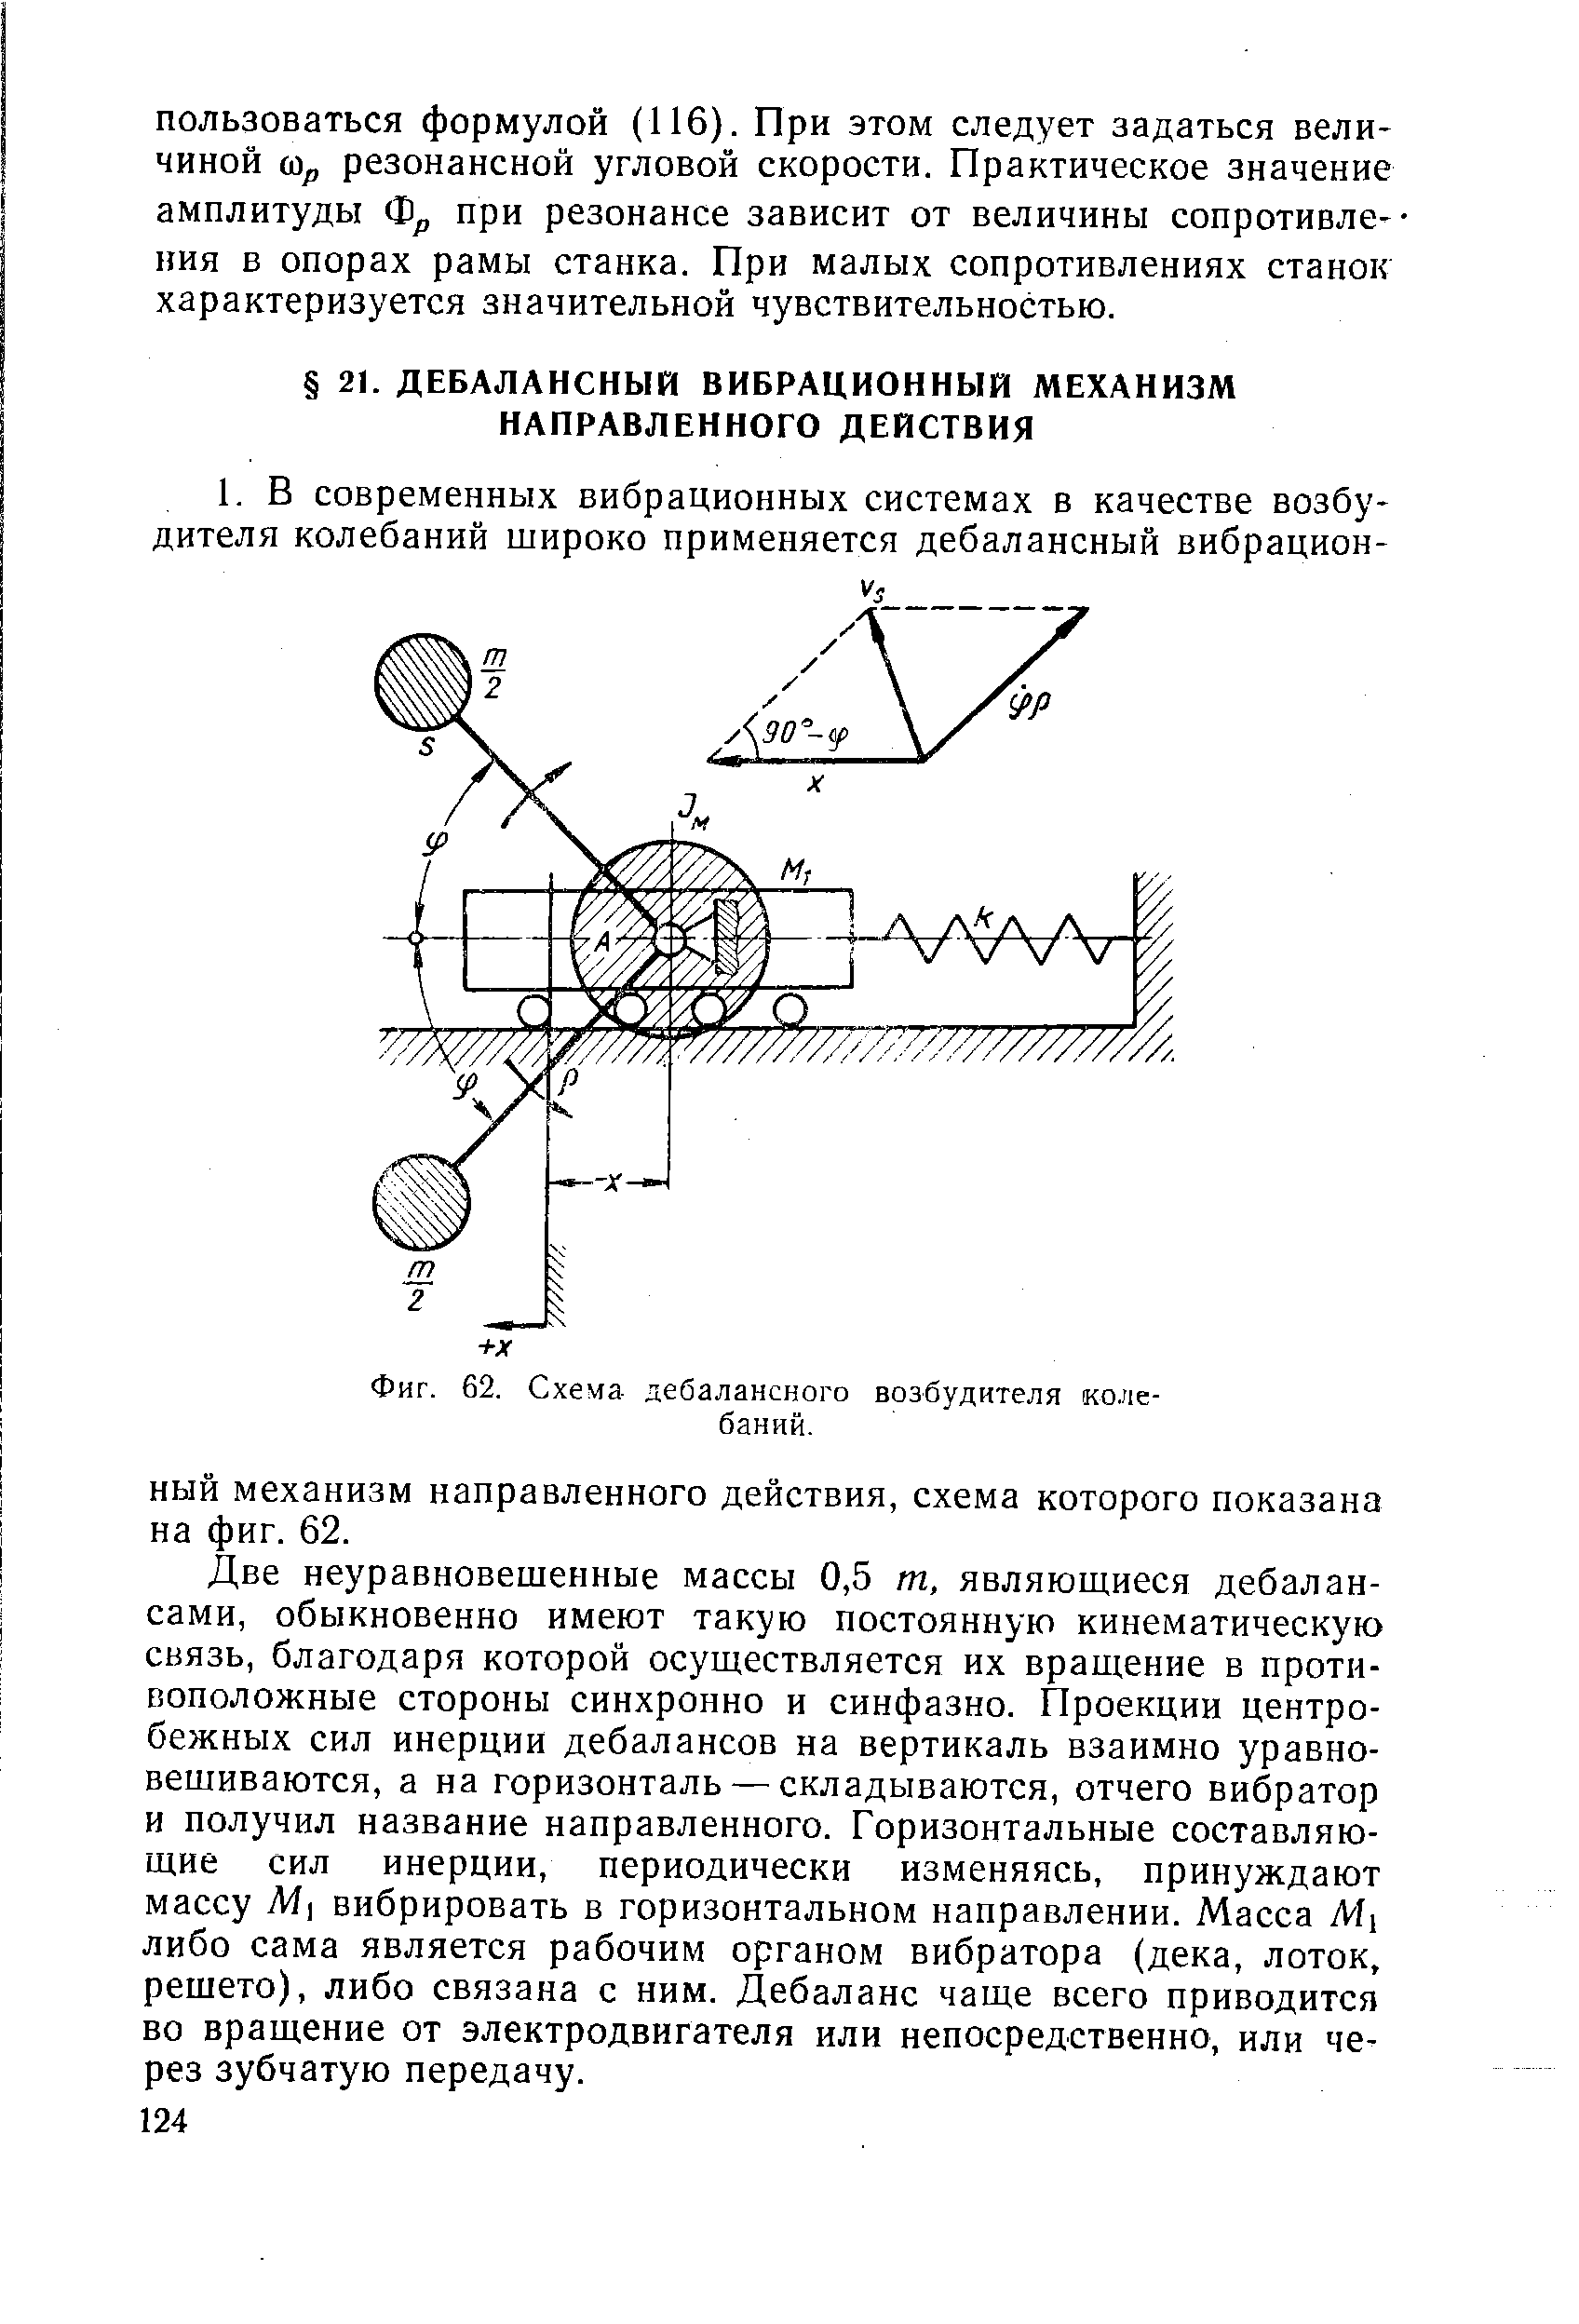 Фиг. 62. Схема дебалансного возбудителя колебаний.
